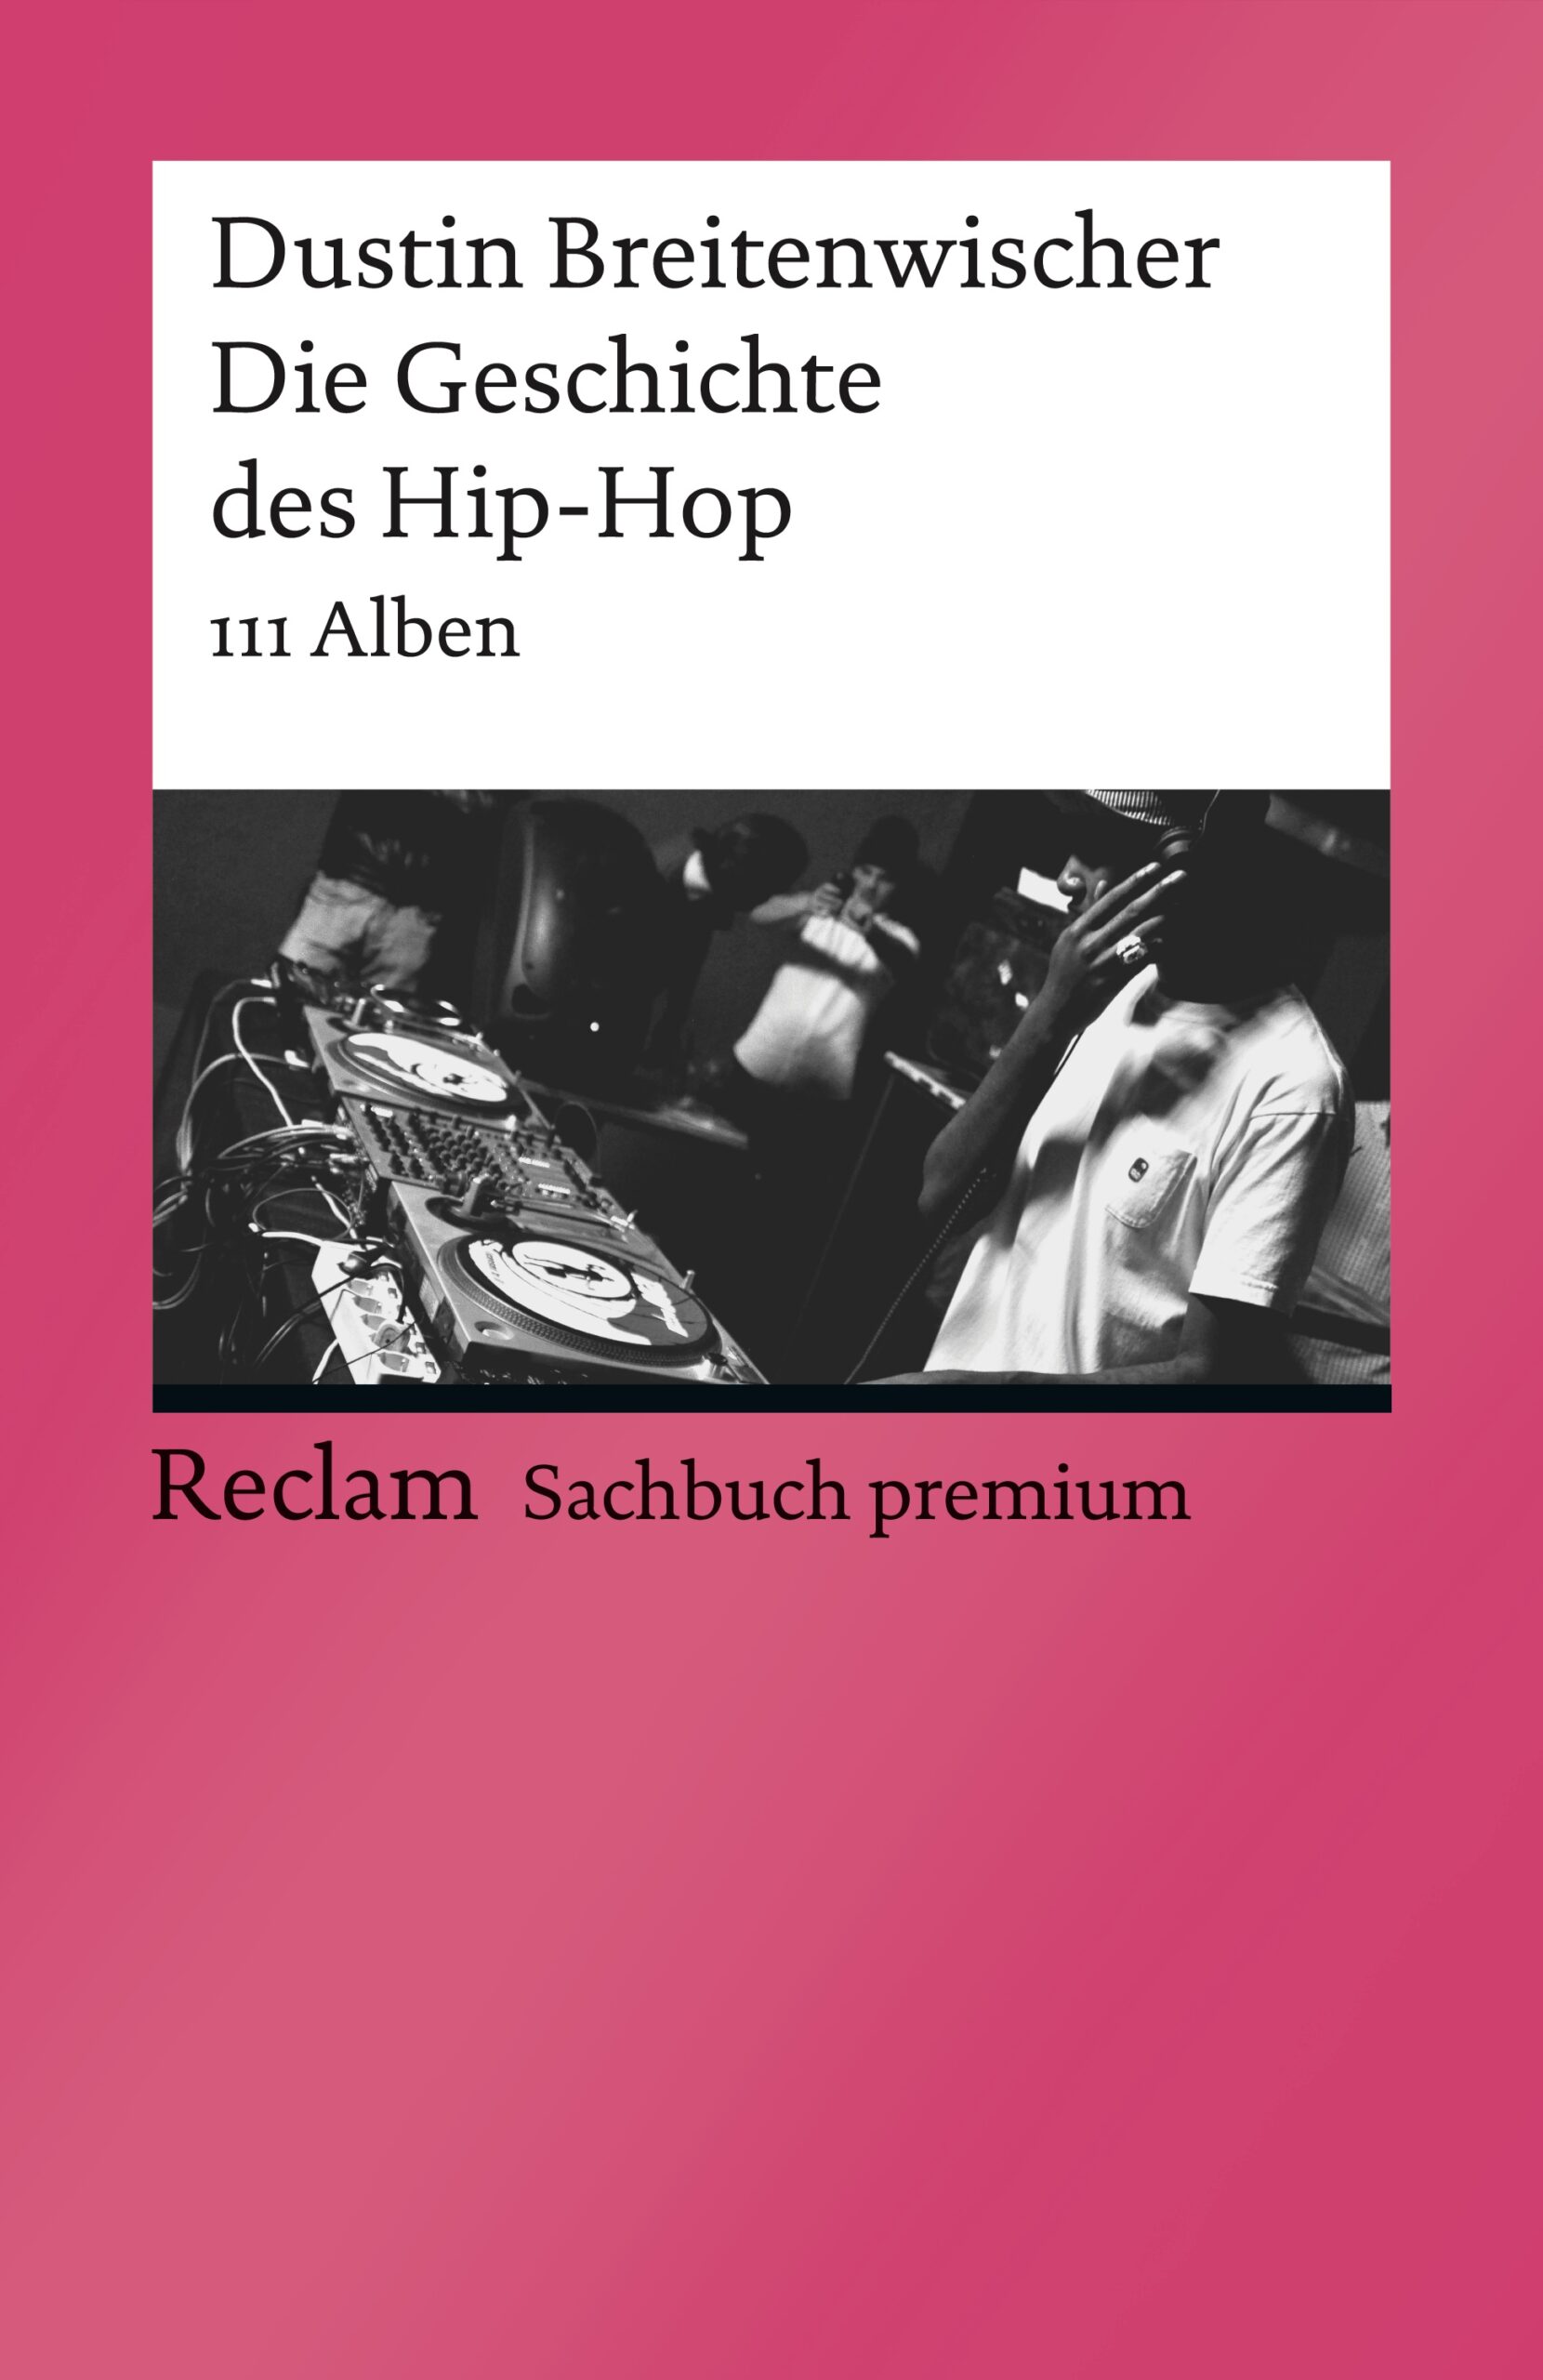 Mit-111-Alben-durch-Die-Geschichte-des-Hip-Hop-Buch-Review